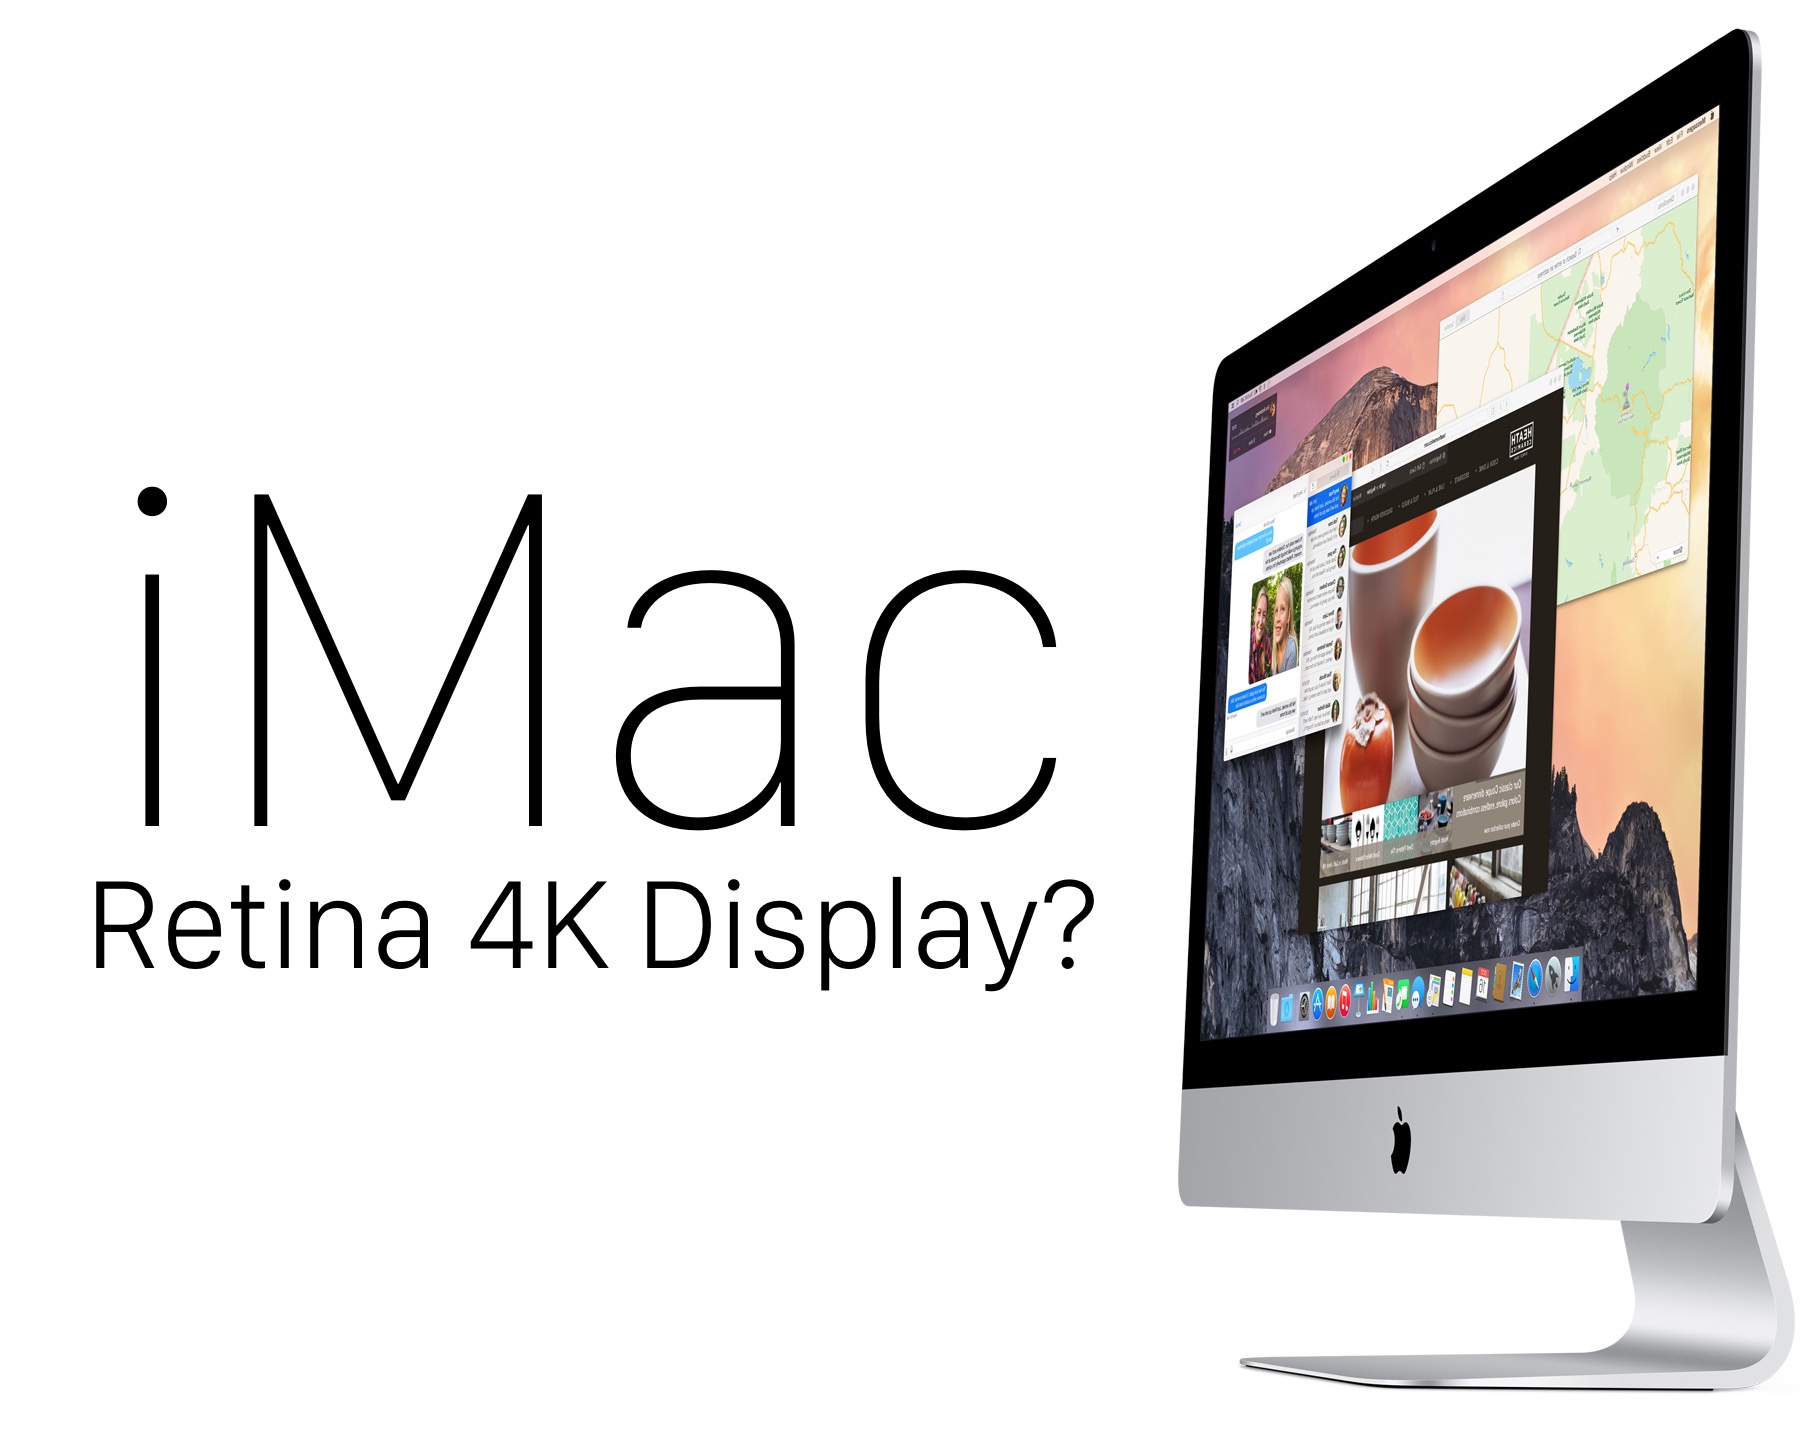 Appleが開発中と噂されている「4K iMac」の設定ファイルがOS X 10.11 El CapitanのBeta 6内に確認される。